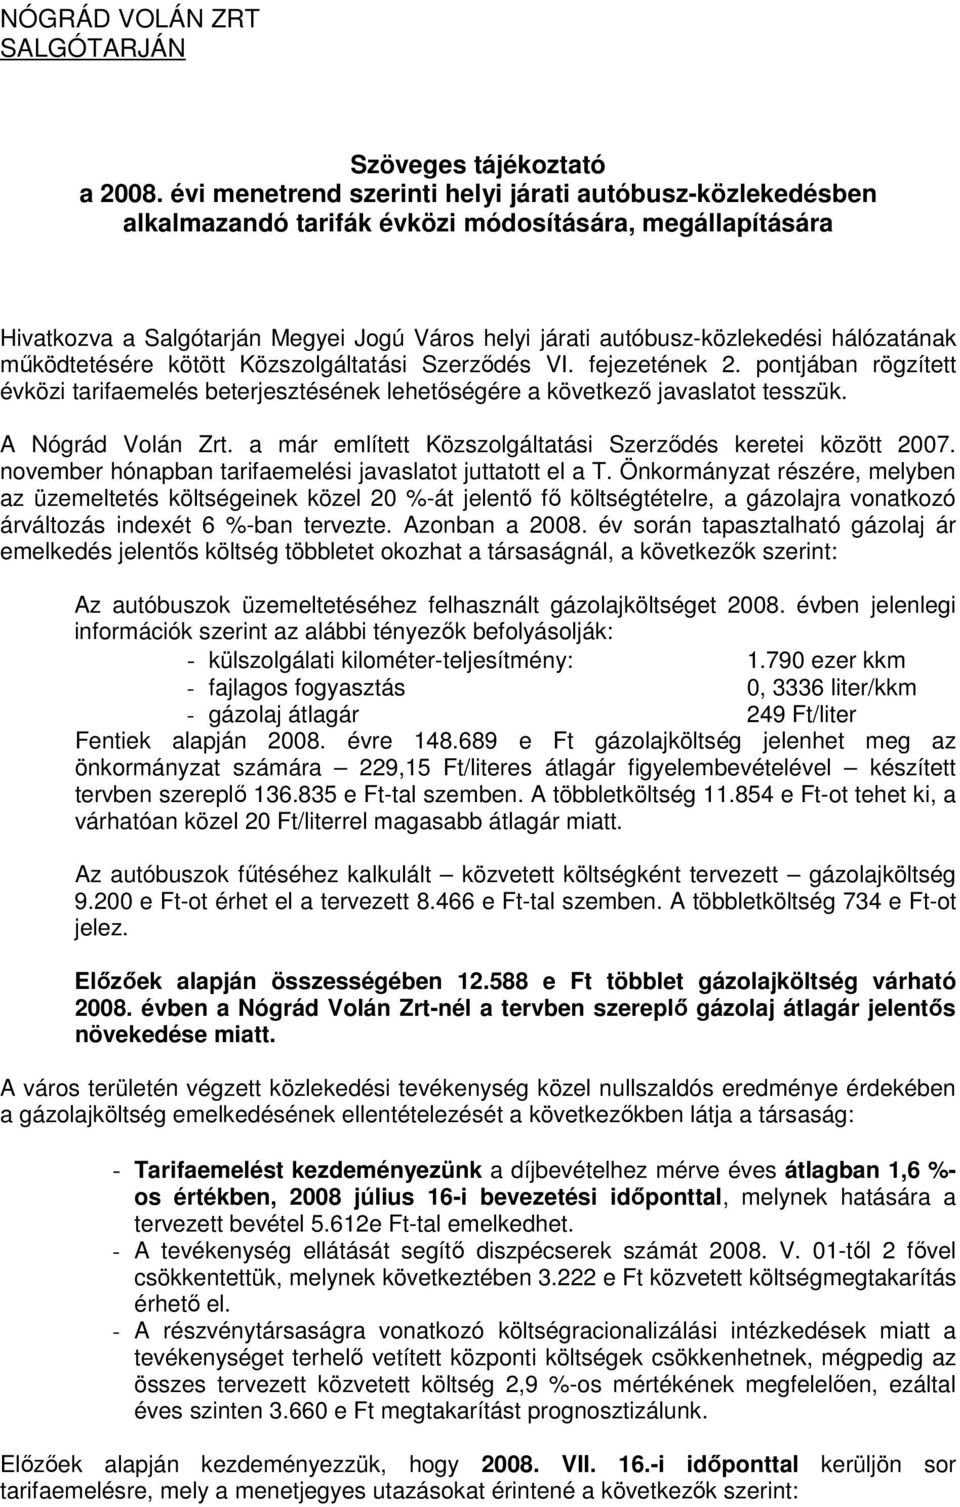 hálózatának mőködtetésére kötött Közszolgáltatási Szerzıdés VI. fejezetének 2. pontjában rögzített évközi tarifaemelés beterjesztésének lehetıségére a következı javaslatot tesszük. A Nógrád Volán Zrt.